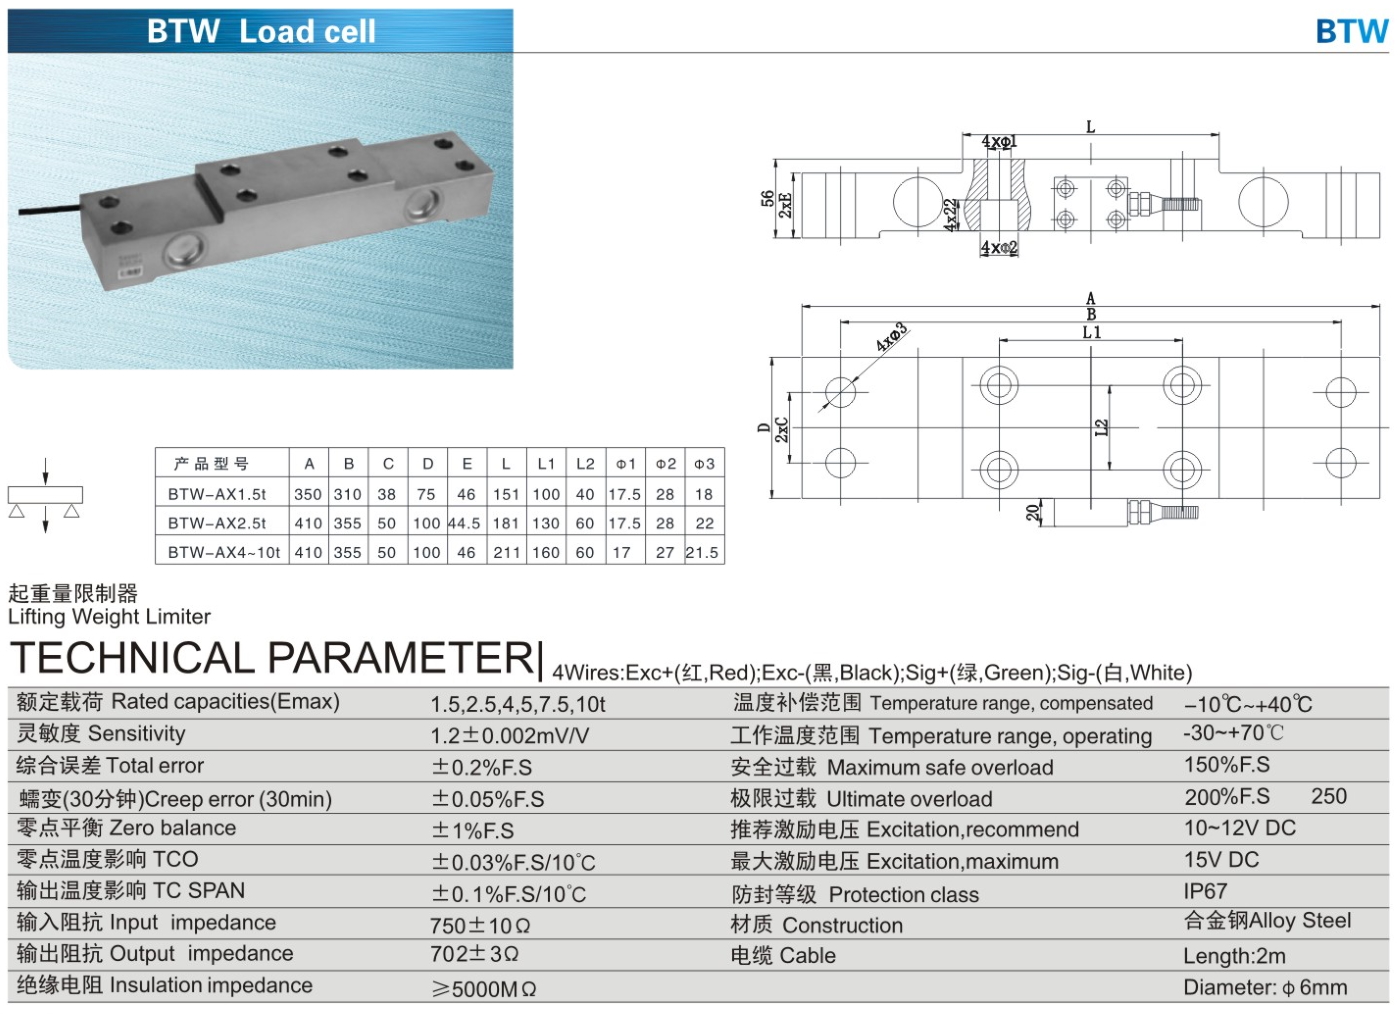 img/loadcell-images/double-ended-shear-beam/KELI_BTW_Loadcell-TTM_Teknoloji.jpg